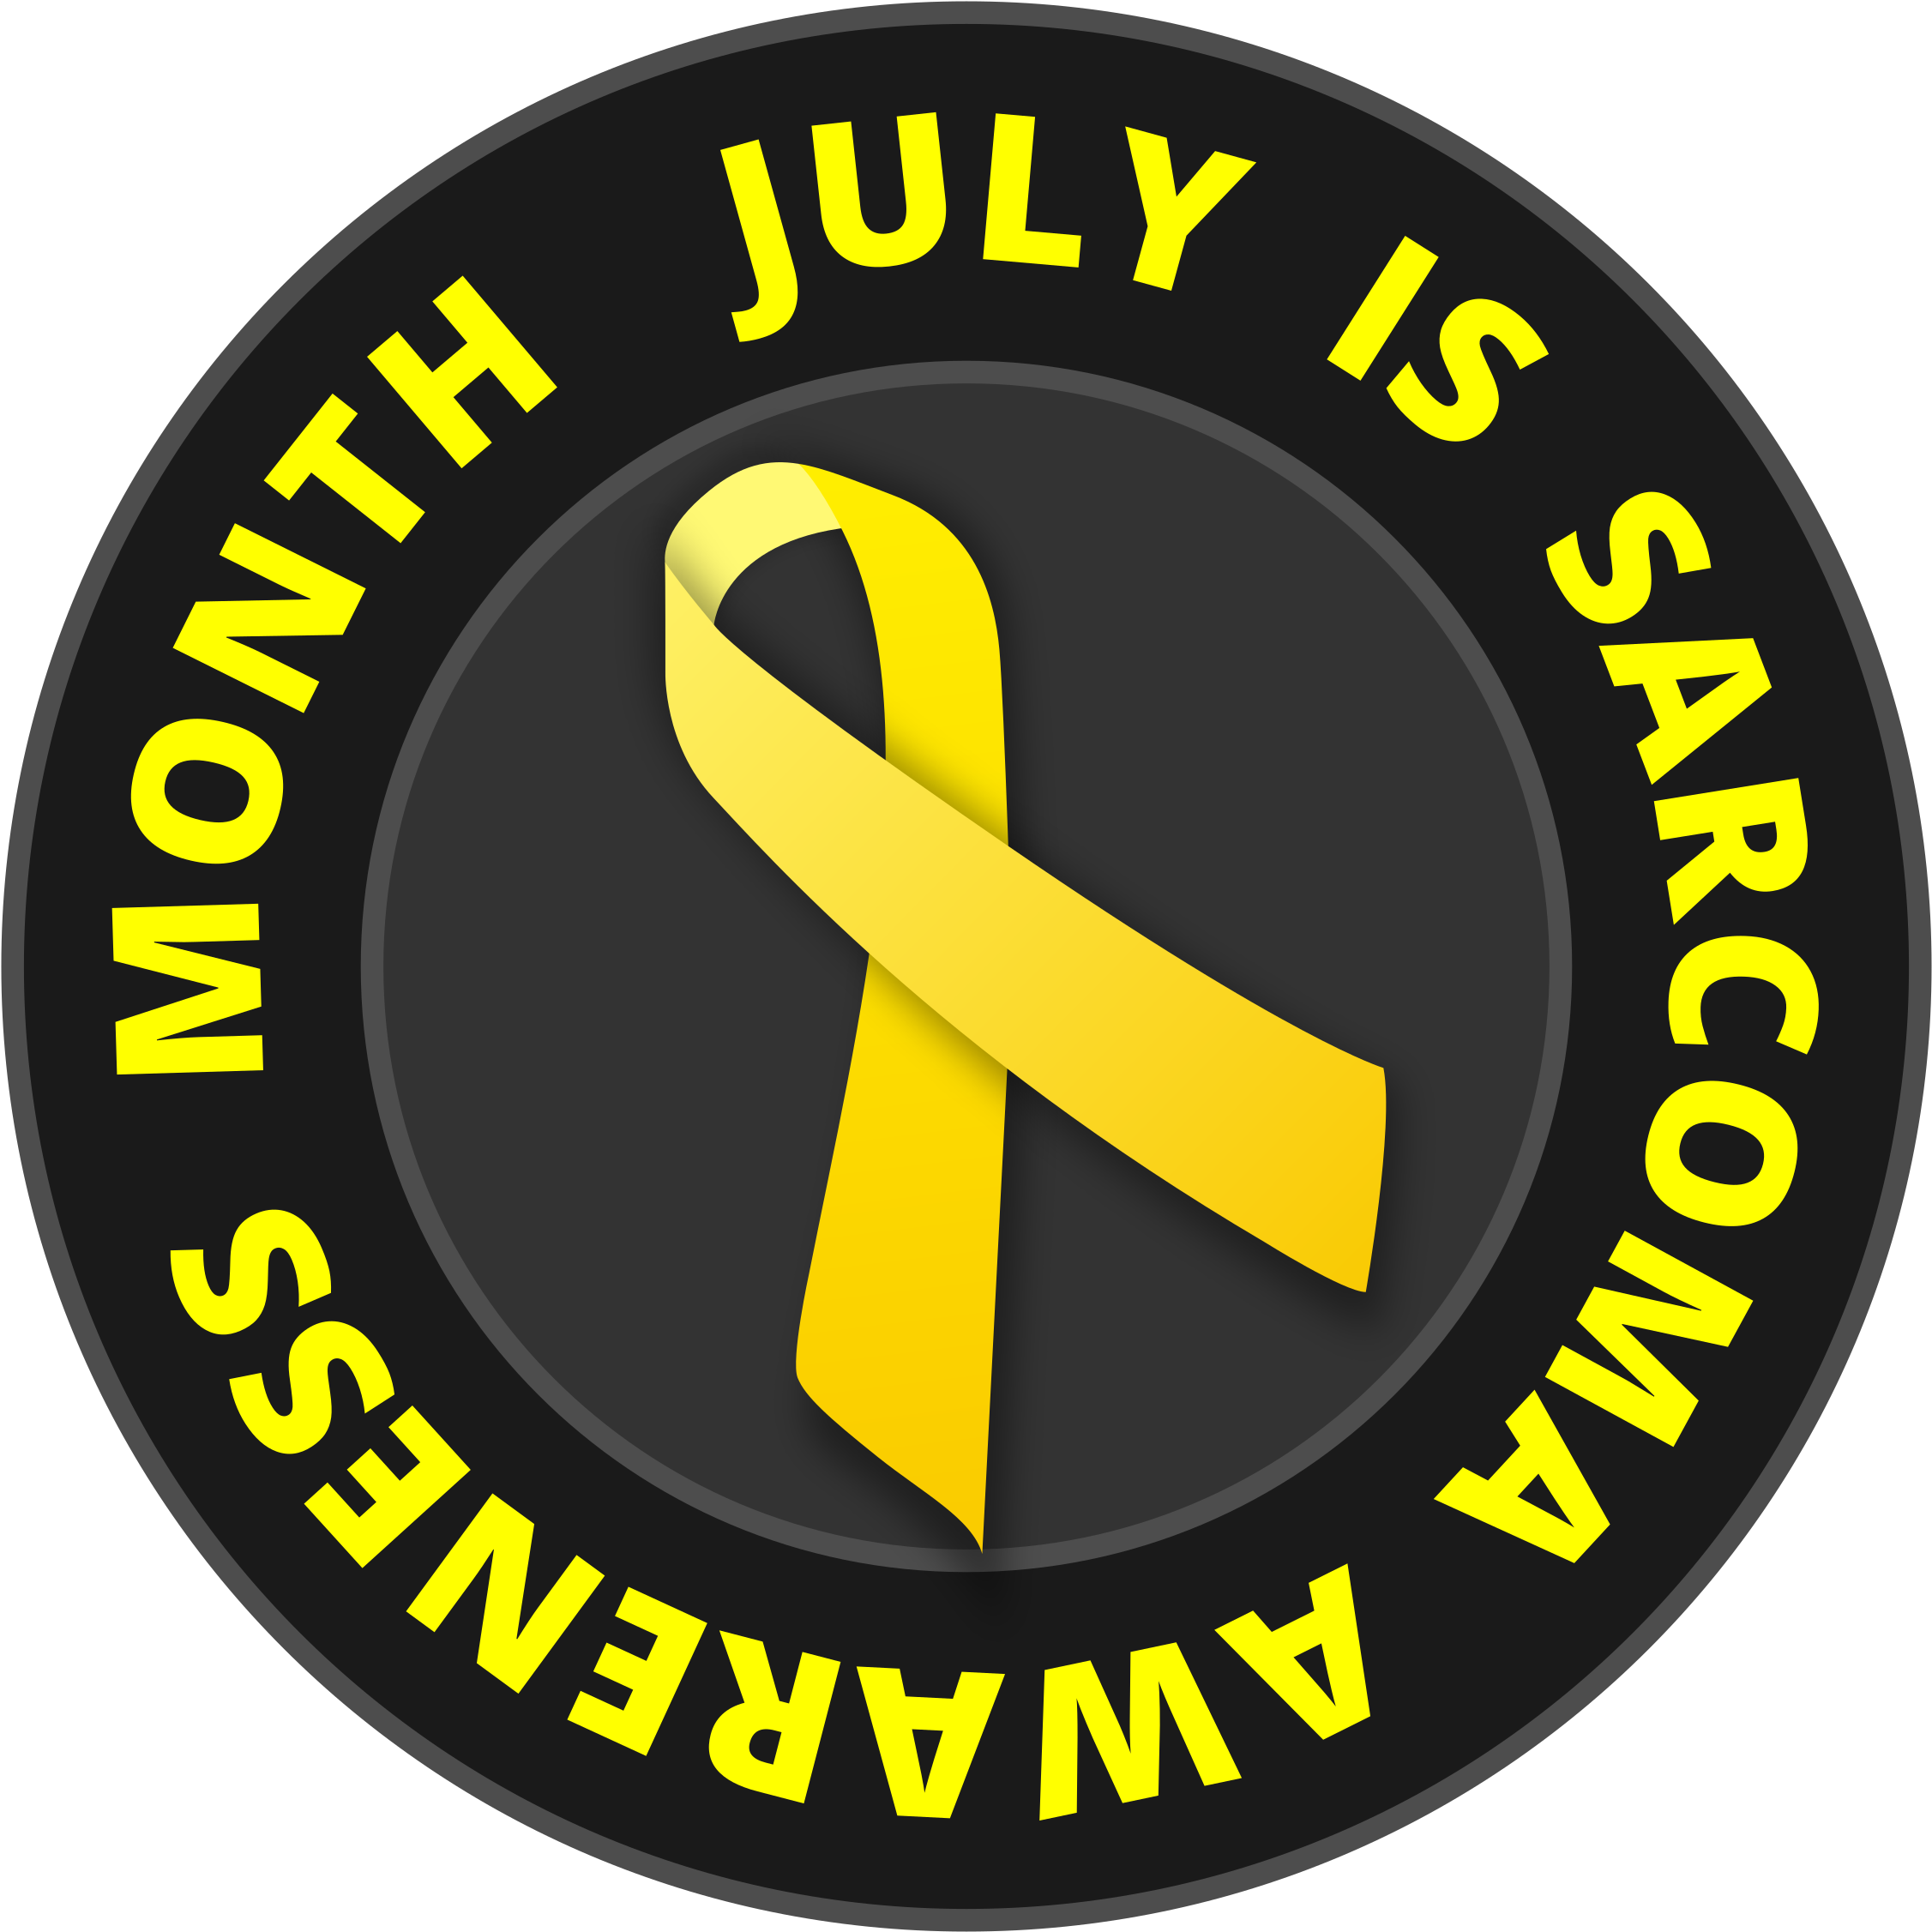 Big Image - July Sarcoma Awareness Month (2400x2400)